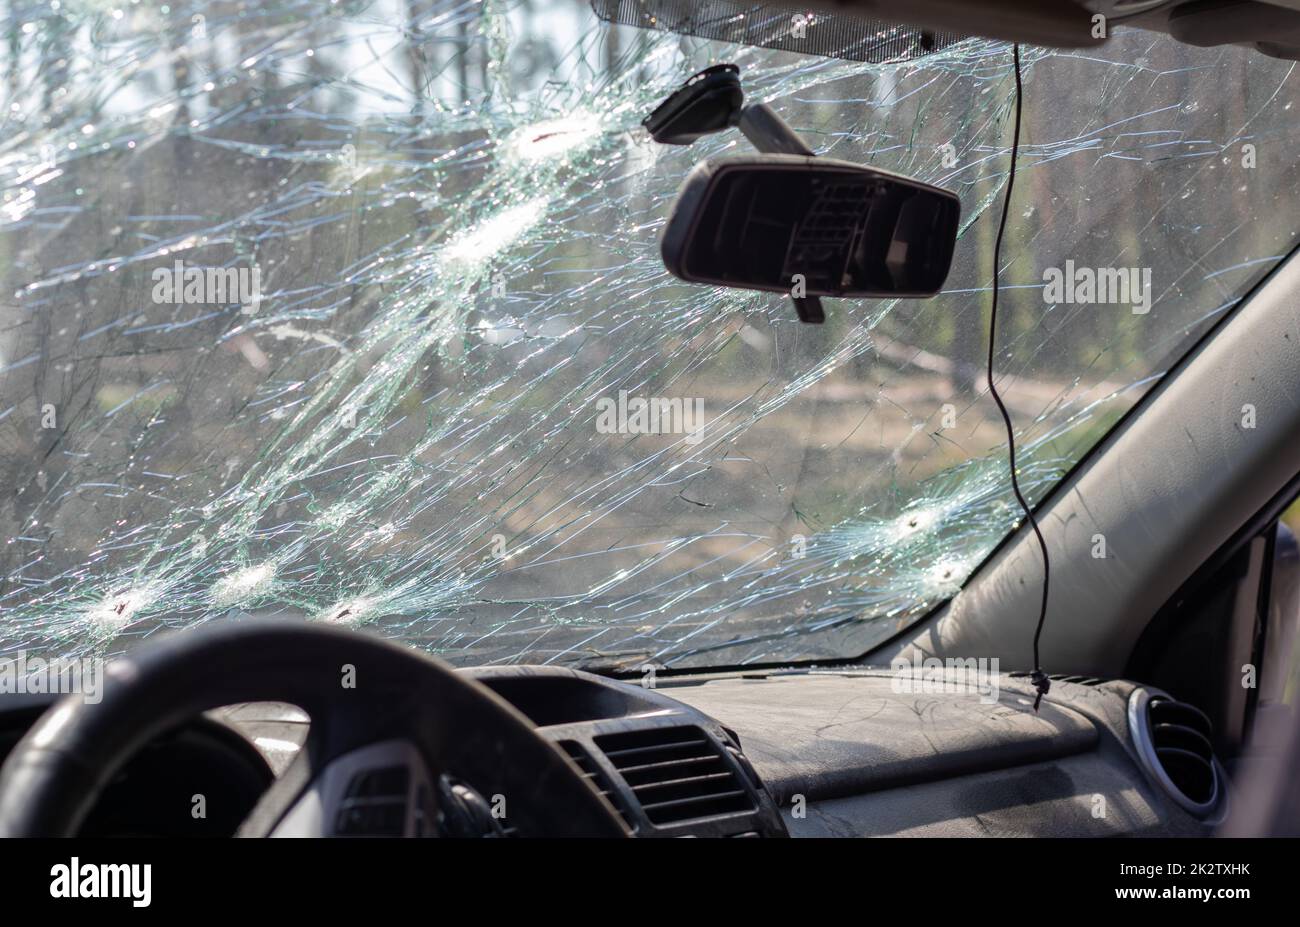 Gebrochene Windschutzscheibe eines Autos durch eine Kugel, durch einen Schuss von einer Waffe, Blick von der Innenseite der Kabine. Beschädigtes Glas mit Spuren eines entgegenkommenden Steins auf der Straße. Innenansicht des Fahrzeugs. Stockfoto